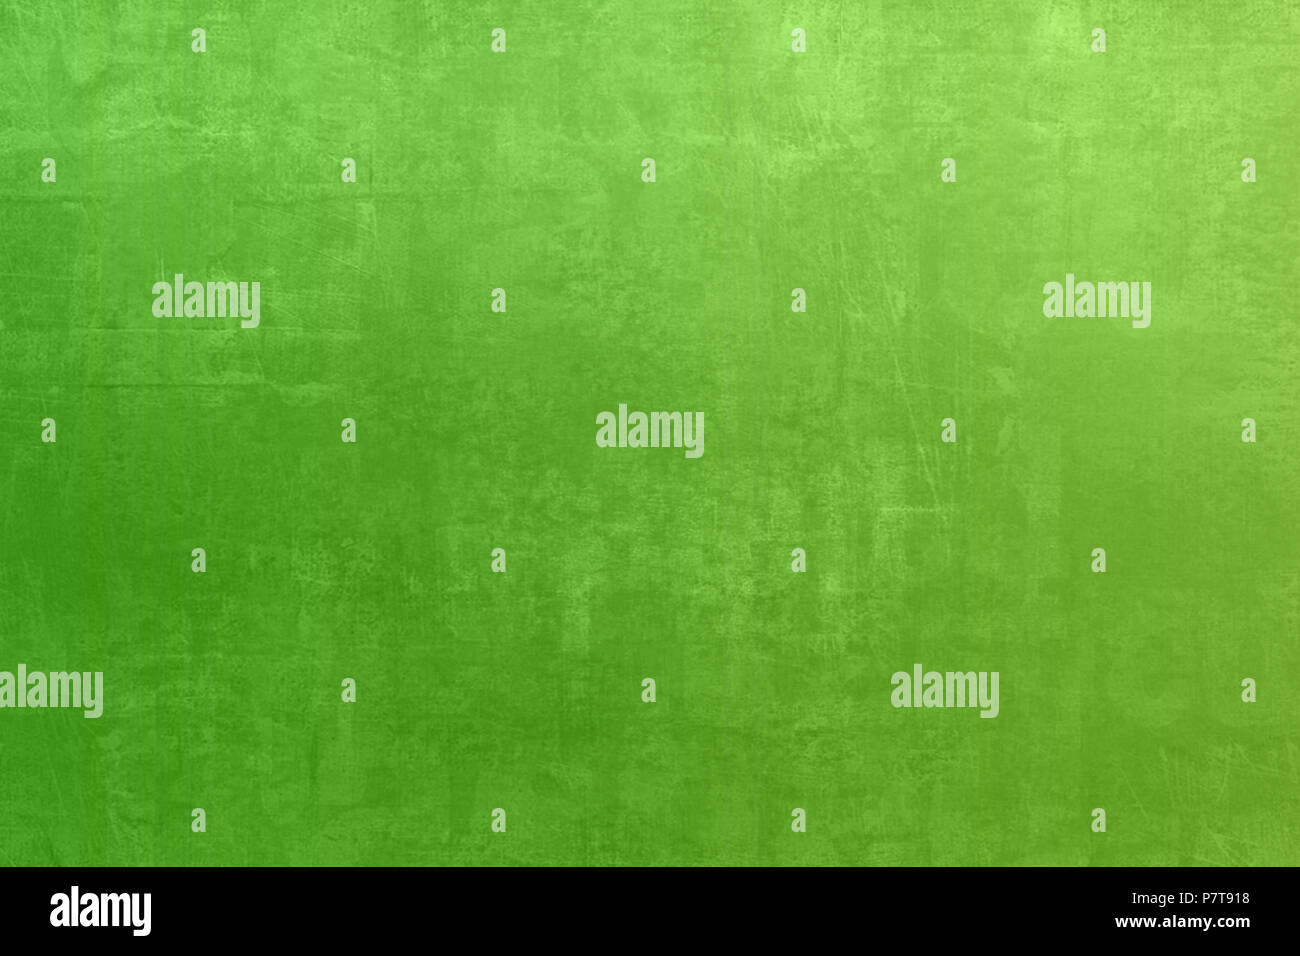 Green grunge Textur Fleck mit Steigung Farbe Vintage Retro Filter für Hintergrund Stockfoto